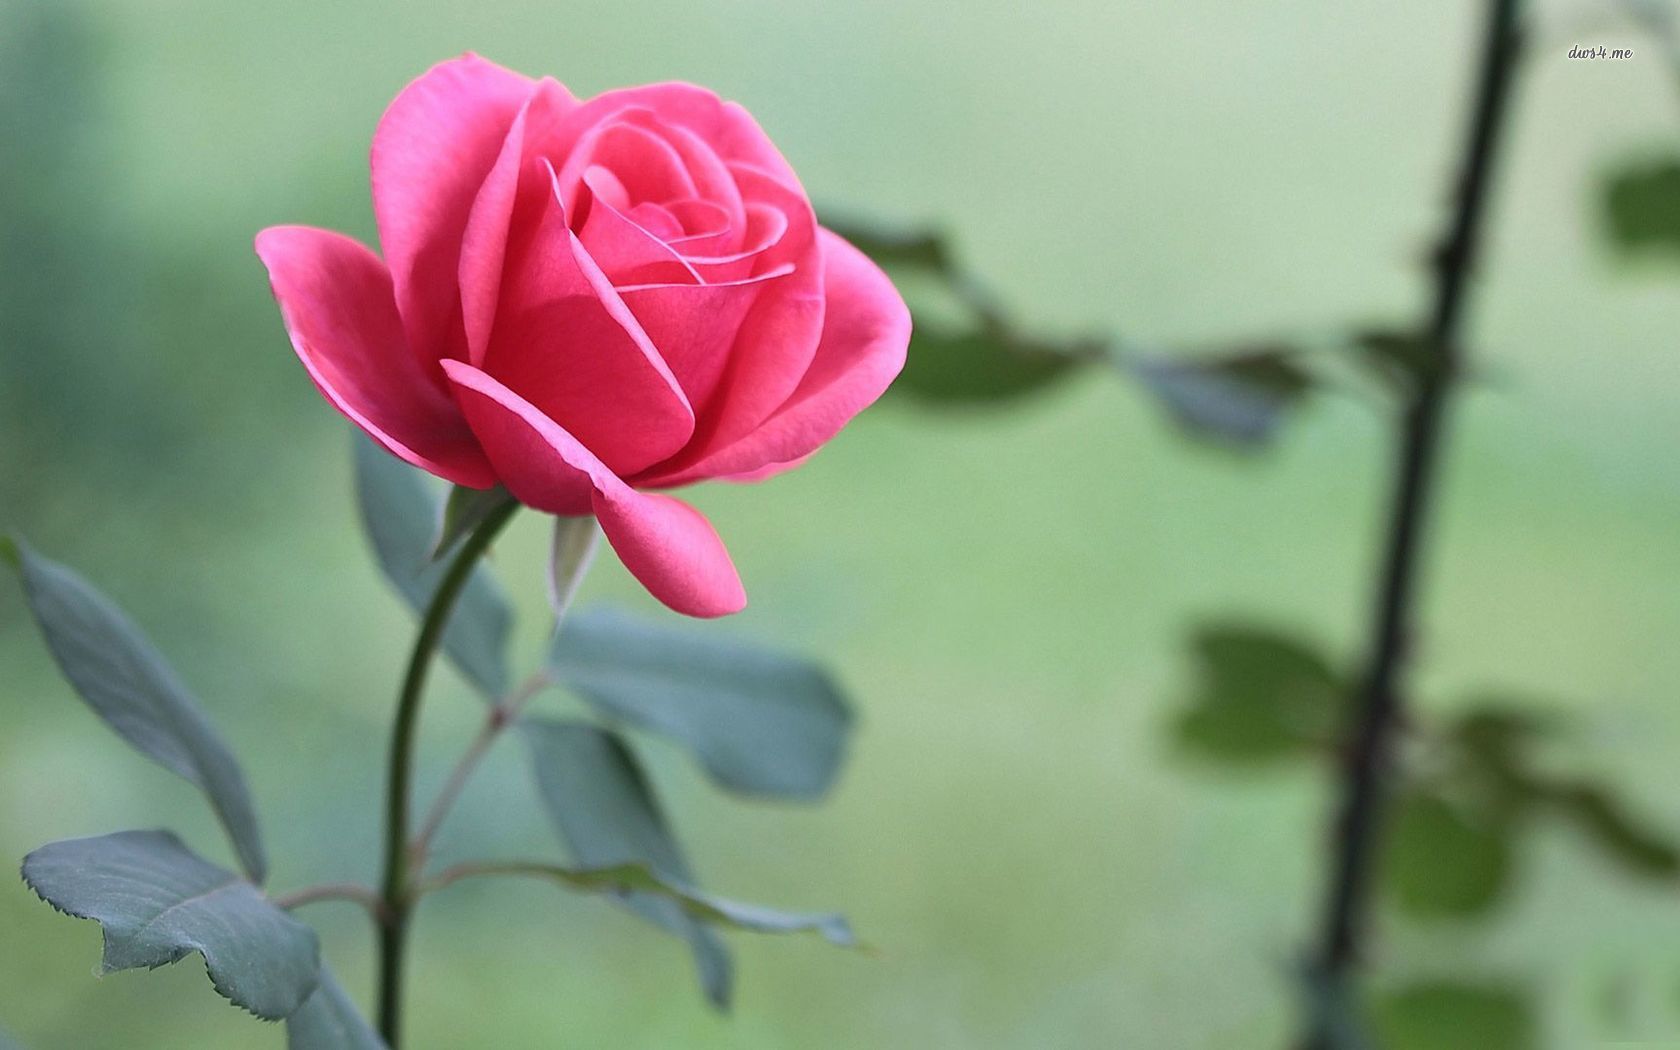 Hoa hồng là biểu tượng của tình yêu và sự đam mê, khiến cho bất kỳ ai cũng phải trầm trồ mỗi khi nhìn thấy chúng. Hãy cùng chiêm ngưỡng những bức ảnh hoa hồng tuyệt đẹp, giúp bạn tạo cảm hứng và làm mới tinh thần.